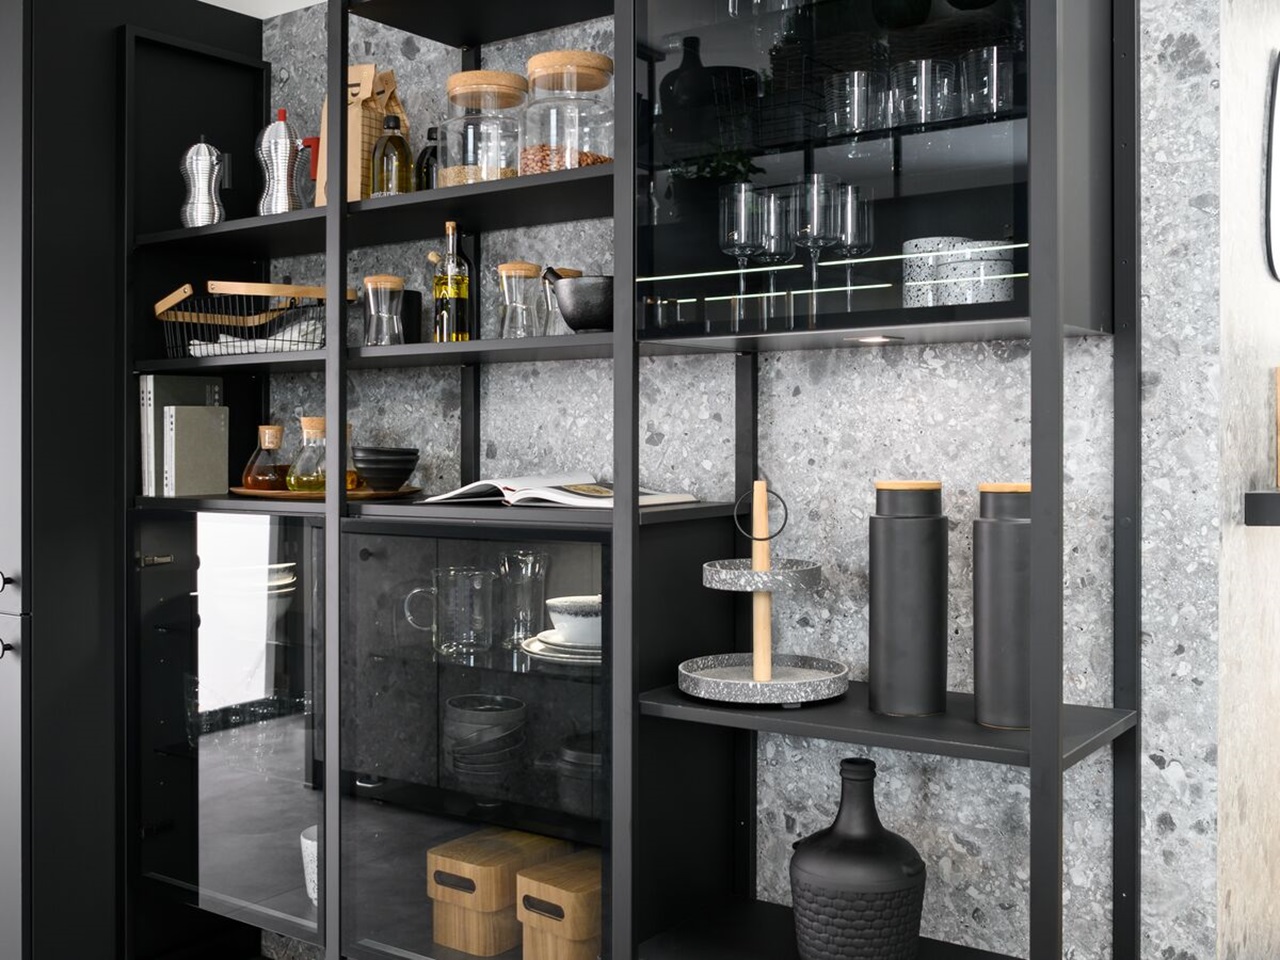 Black metallic kitchen shelves with smoked-glass windows